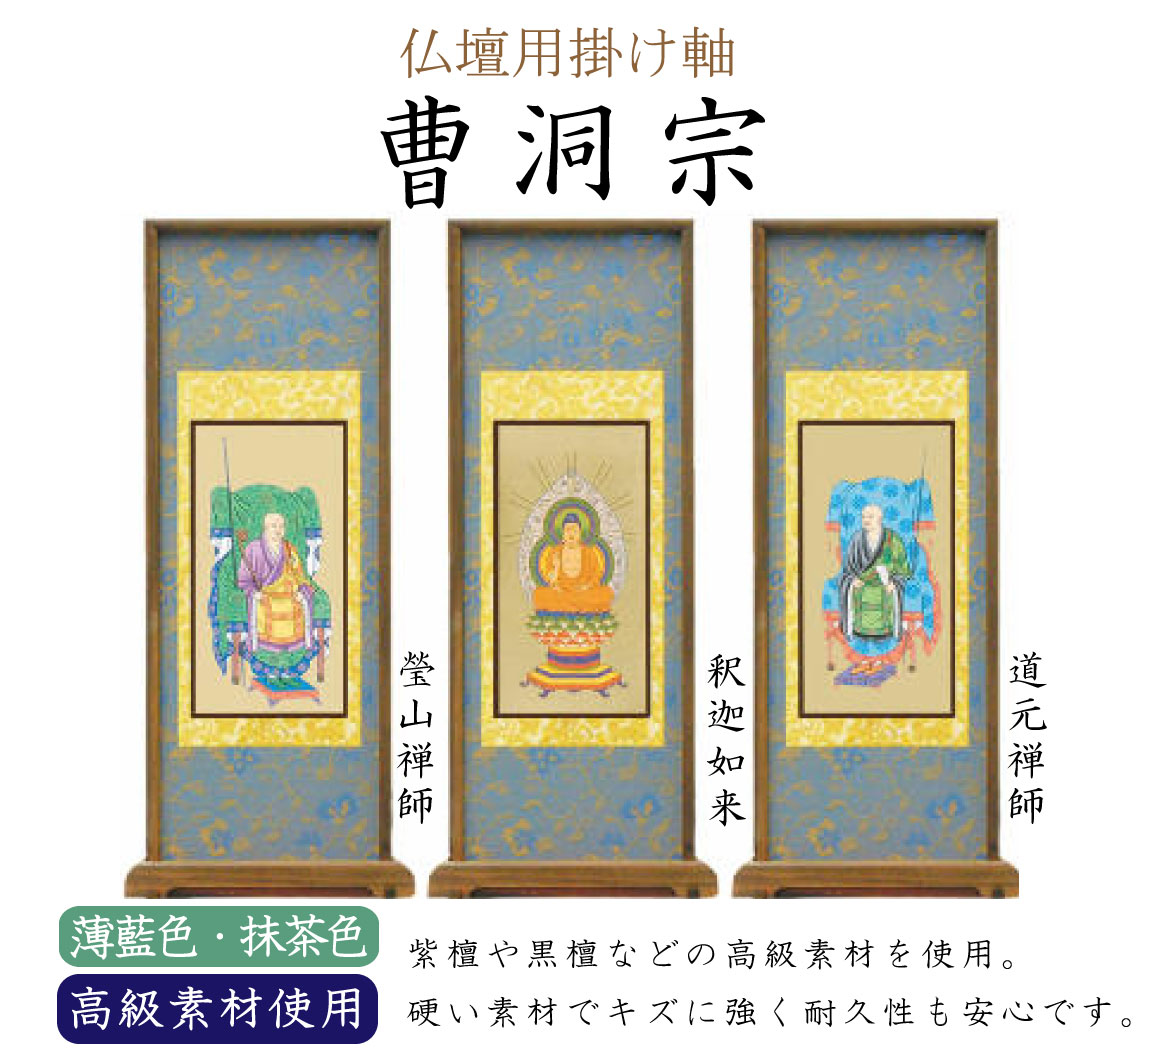 【高級素材】曹洞宗の仏壇用スタンド掛け軸。中央（ご本尊）には釈迦如来、向かって右には道元禅師、左には瑩山禅師がかかります。高級素材の紫檀や黒檀が使用されています。